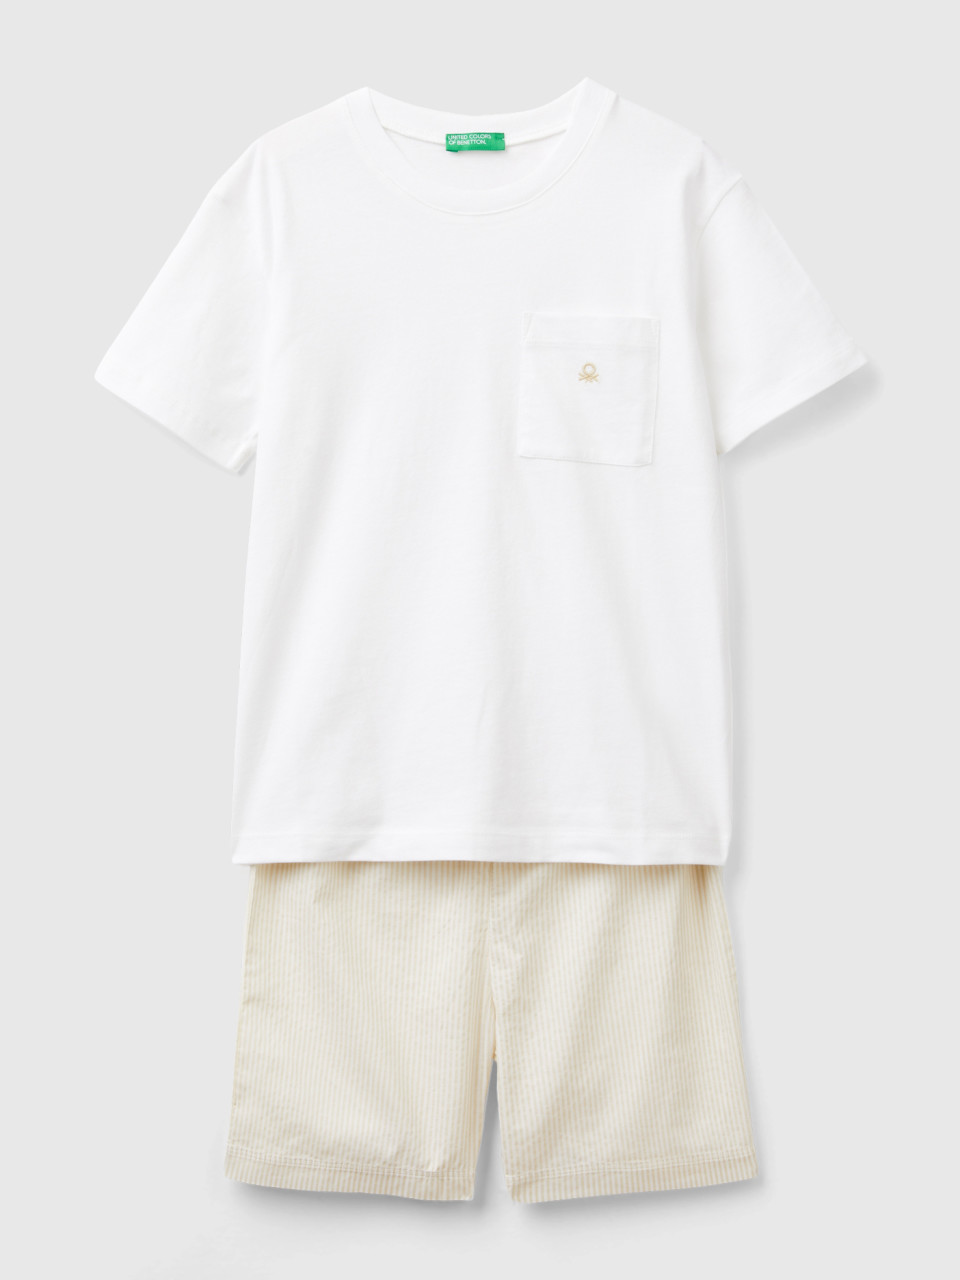 Benetton, Pyjamas With Striped Shorts, White, Kids